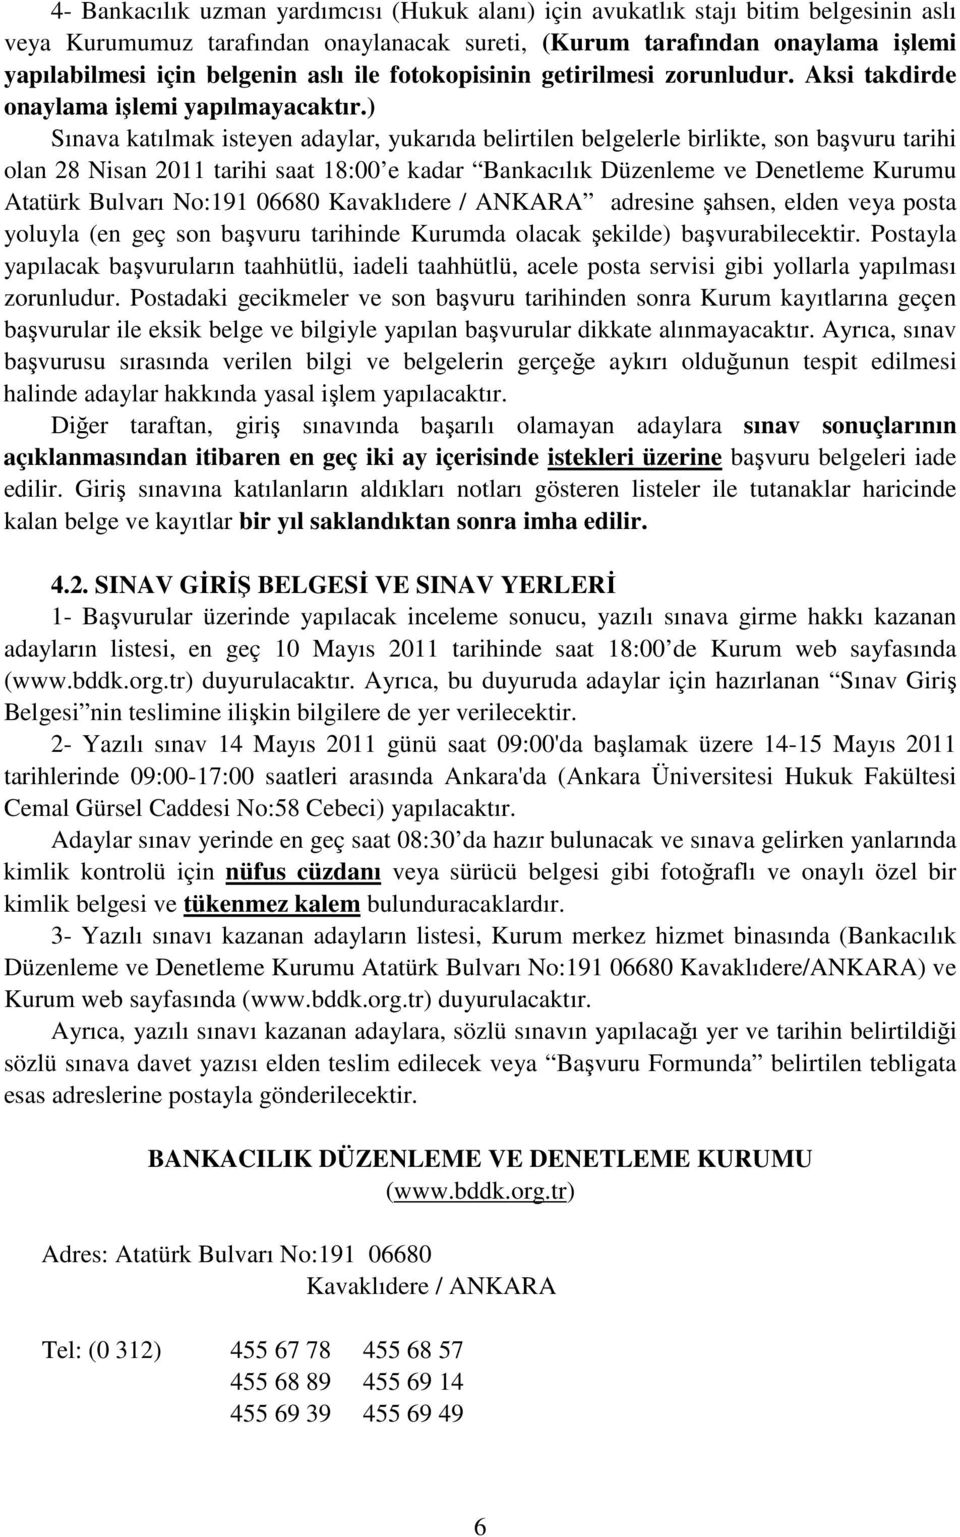 ) Sınava katılmak isteyen adaylar, yukarıda belirtilen belgelerle birlikte, son başvuru tarihi olan 28 Nisan 2011 tarihi saat 18:00 e kadar Bankacılık Düzenleme ve Denetleme Kurumu Atatürk Bulvarı